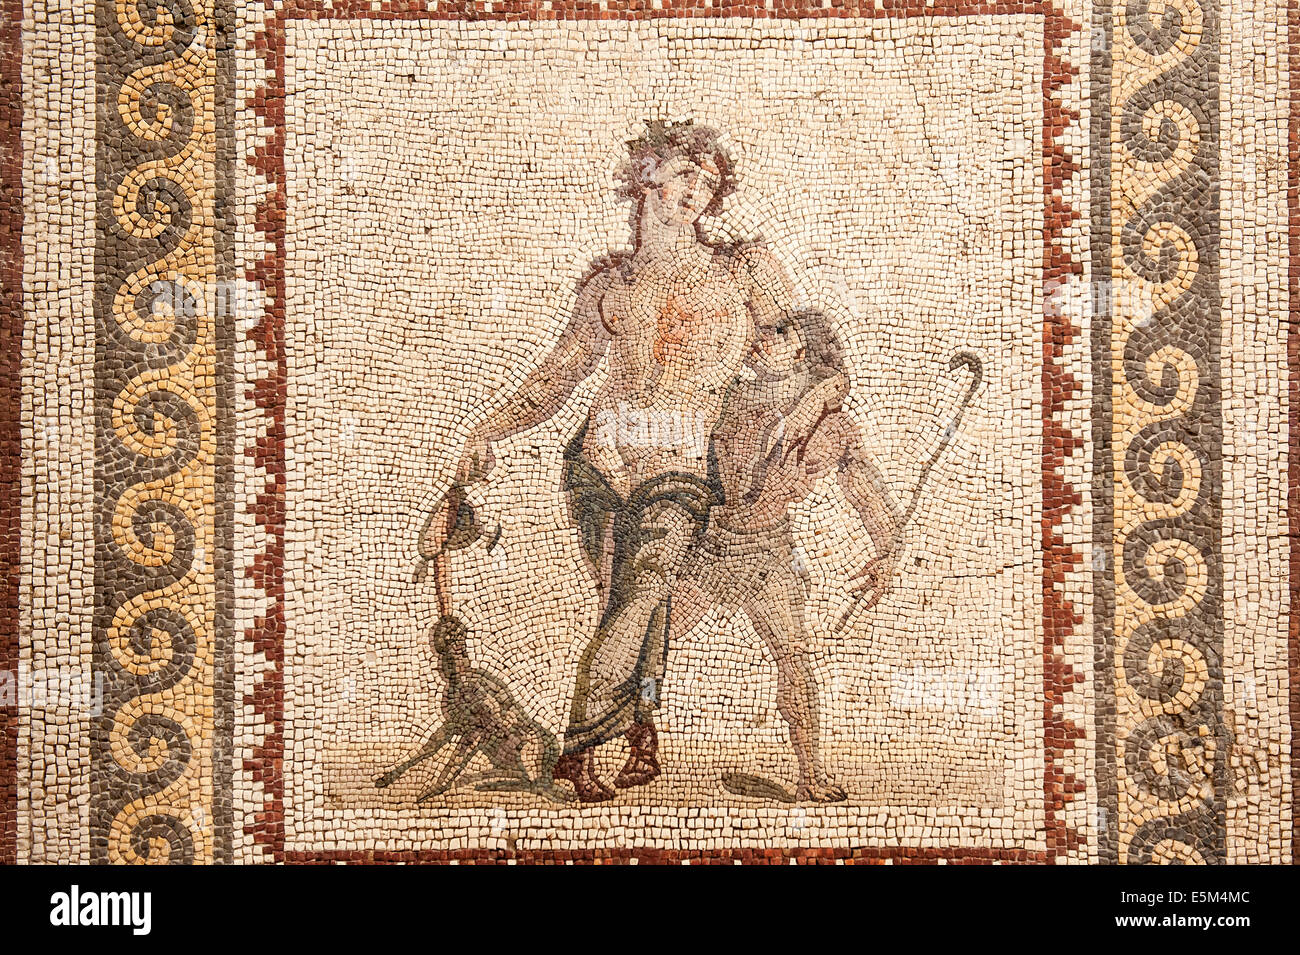 Dionysus borrachos mosaic, 2% A.C., Museo de Arqueología de Hatay, Antioquía, provincia de Hatay, en el suroeste de Turquía Foto de stock